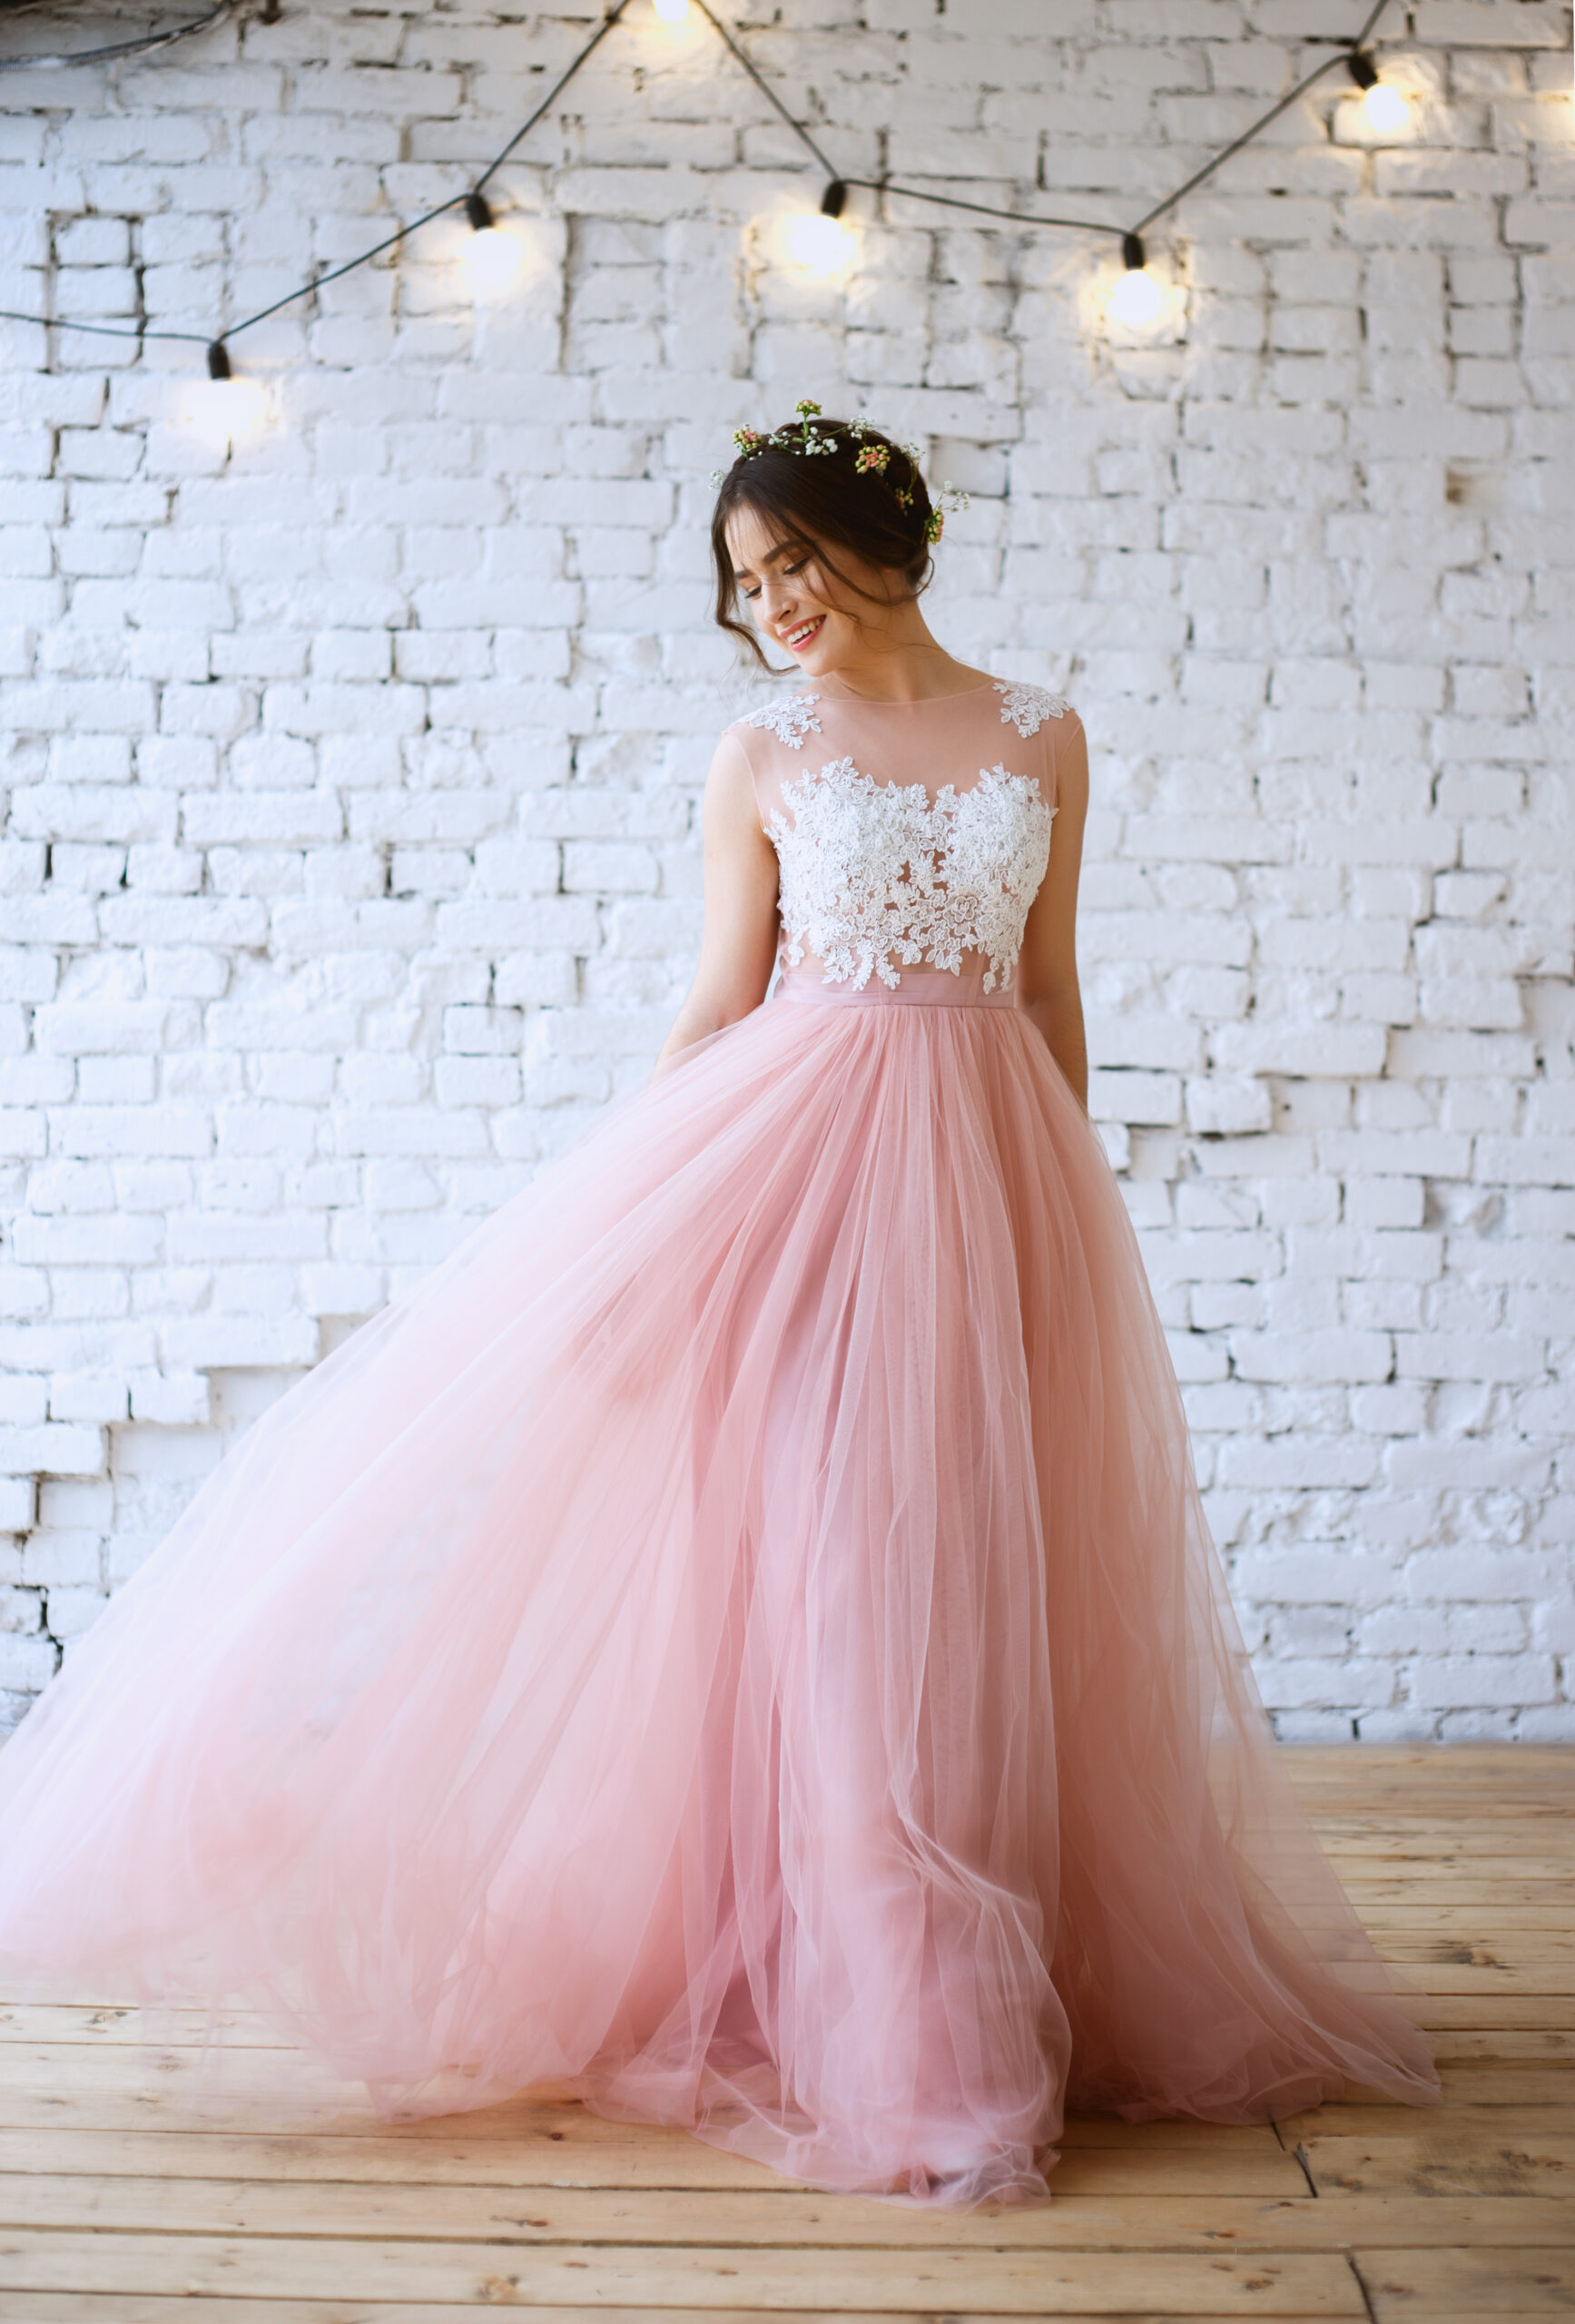 Różowa suknia ślubna. Uśmiechnięta panna młoda w różowej sukni ślubnej.